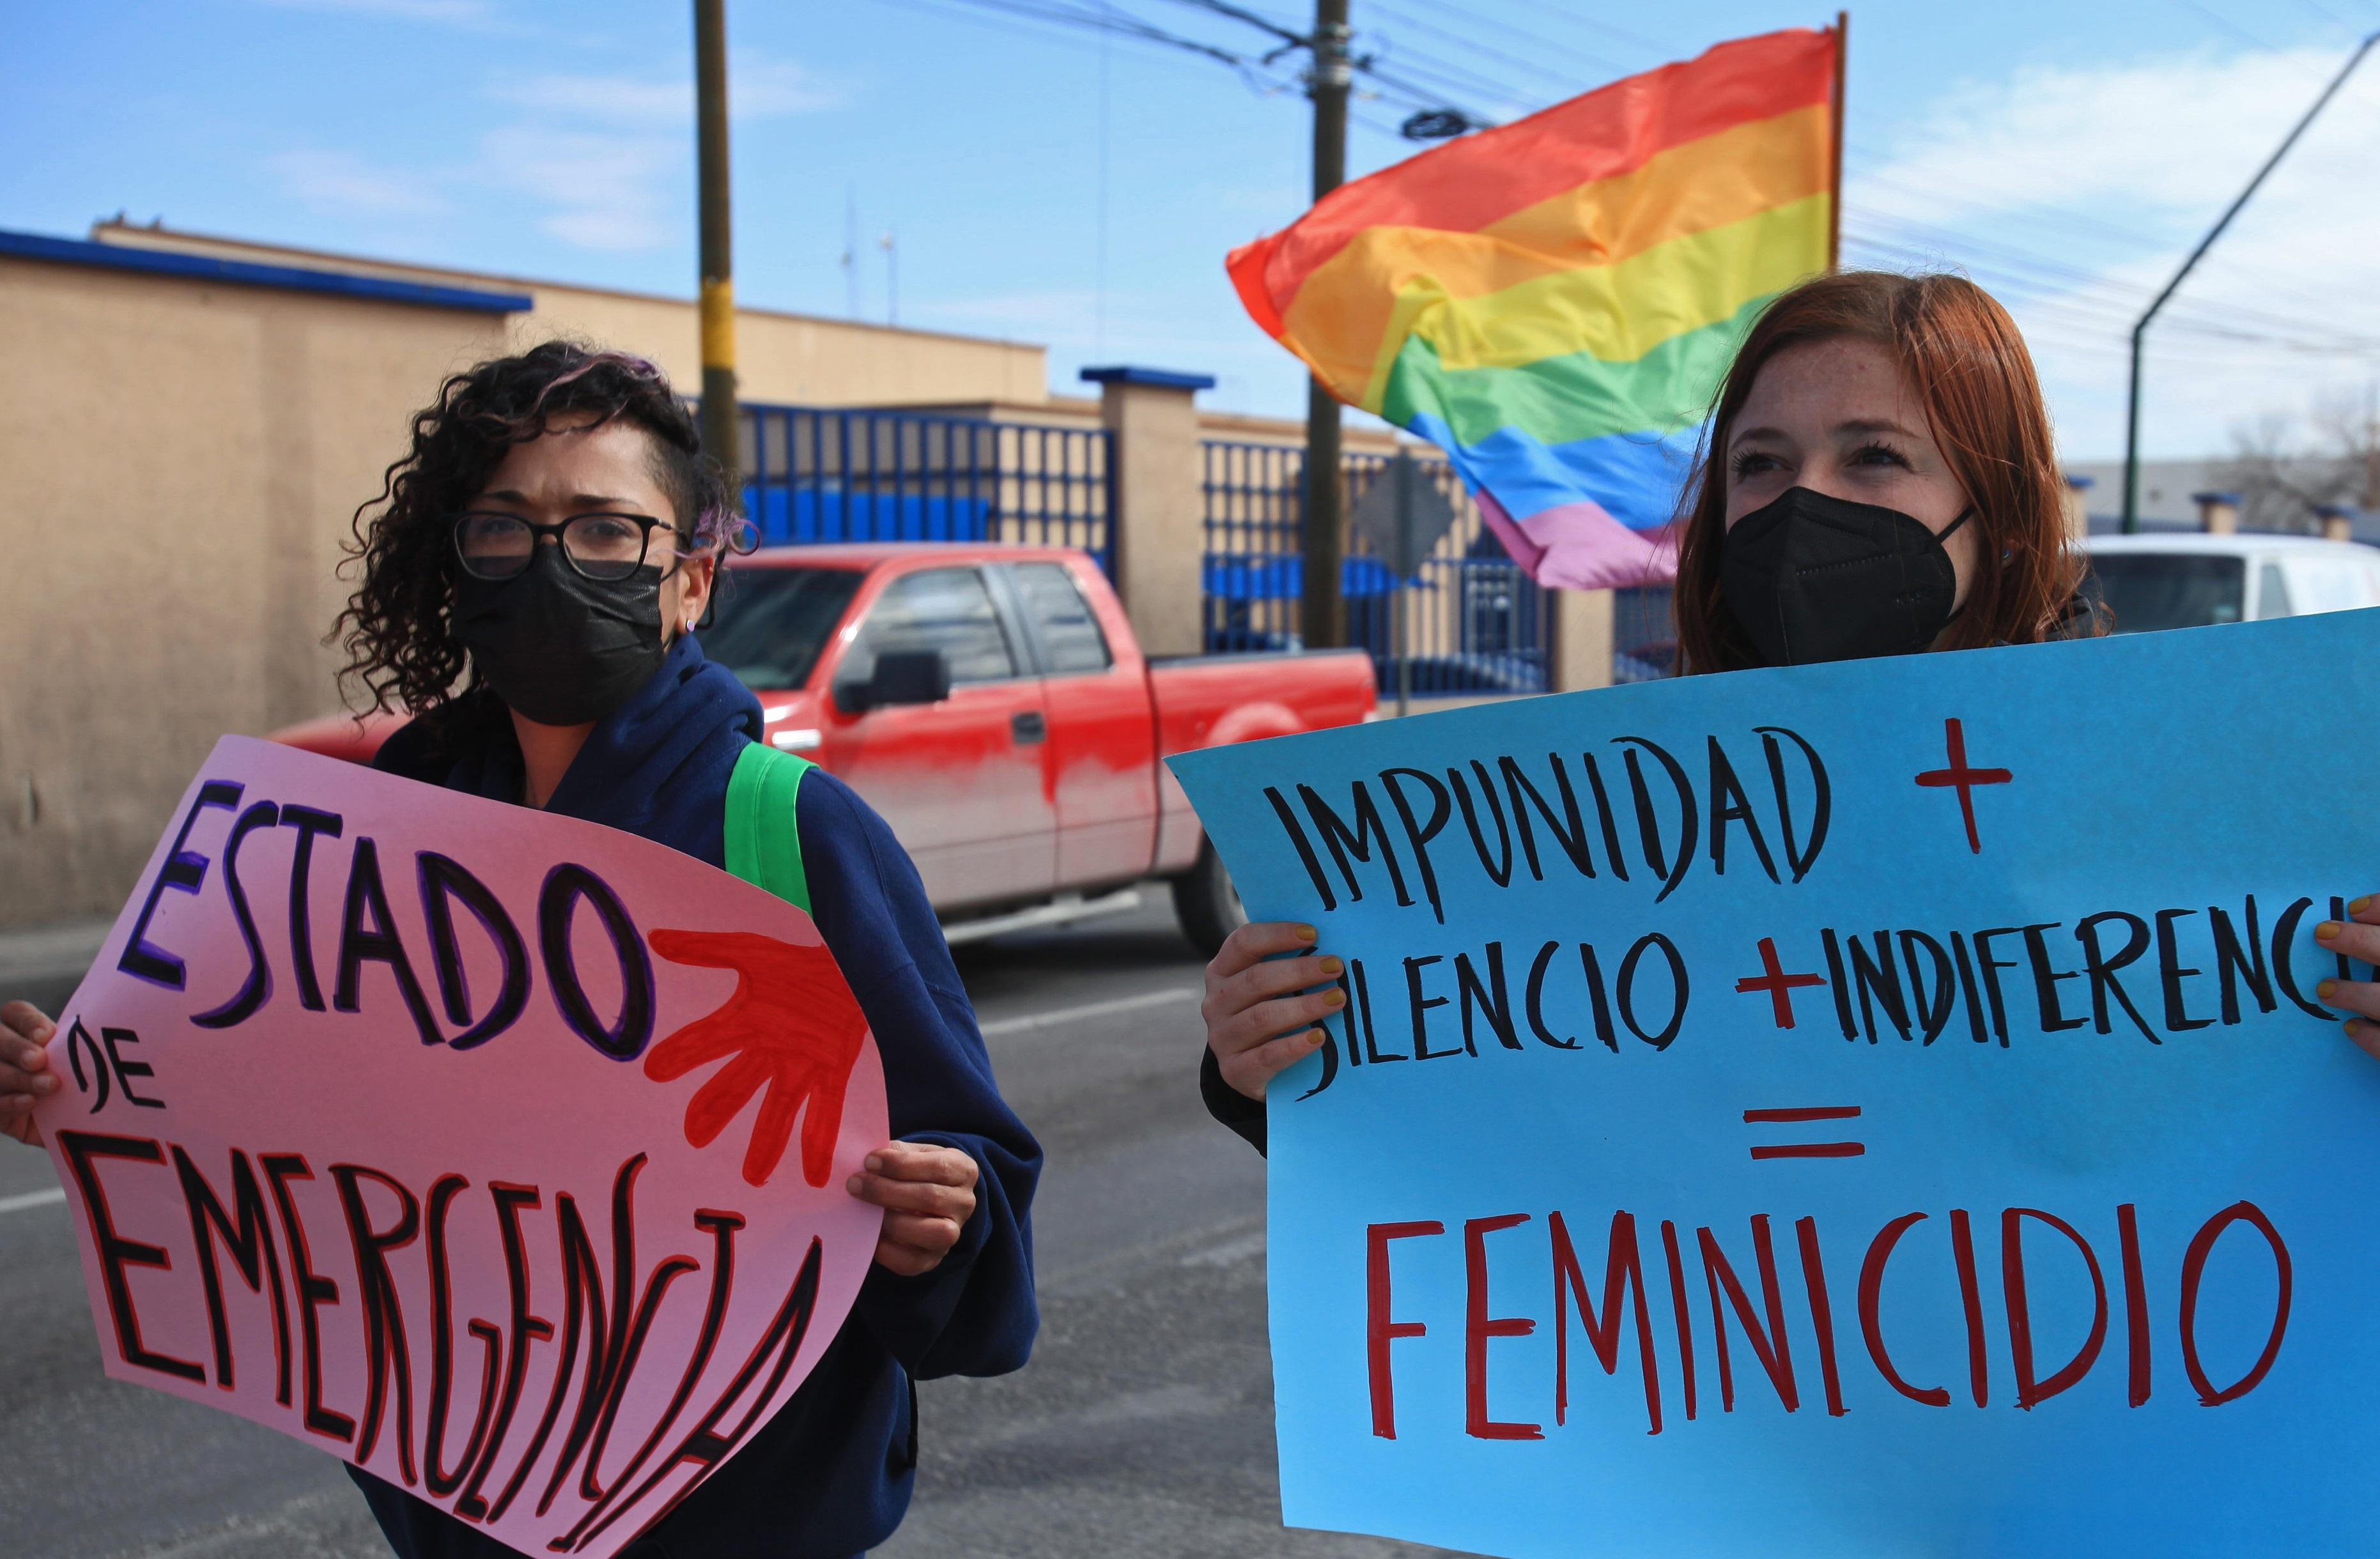 Este jueves ondearon banderas de la comunidad LGBT y mujeres vestidas de negro y con sombreros rosas se unieron a la exigencia de justicia por este hecho violento. (Foto: EFE)